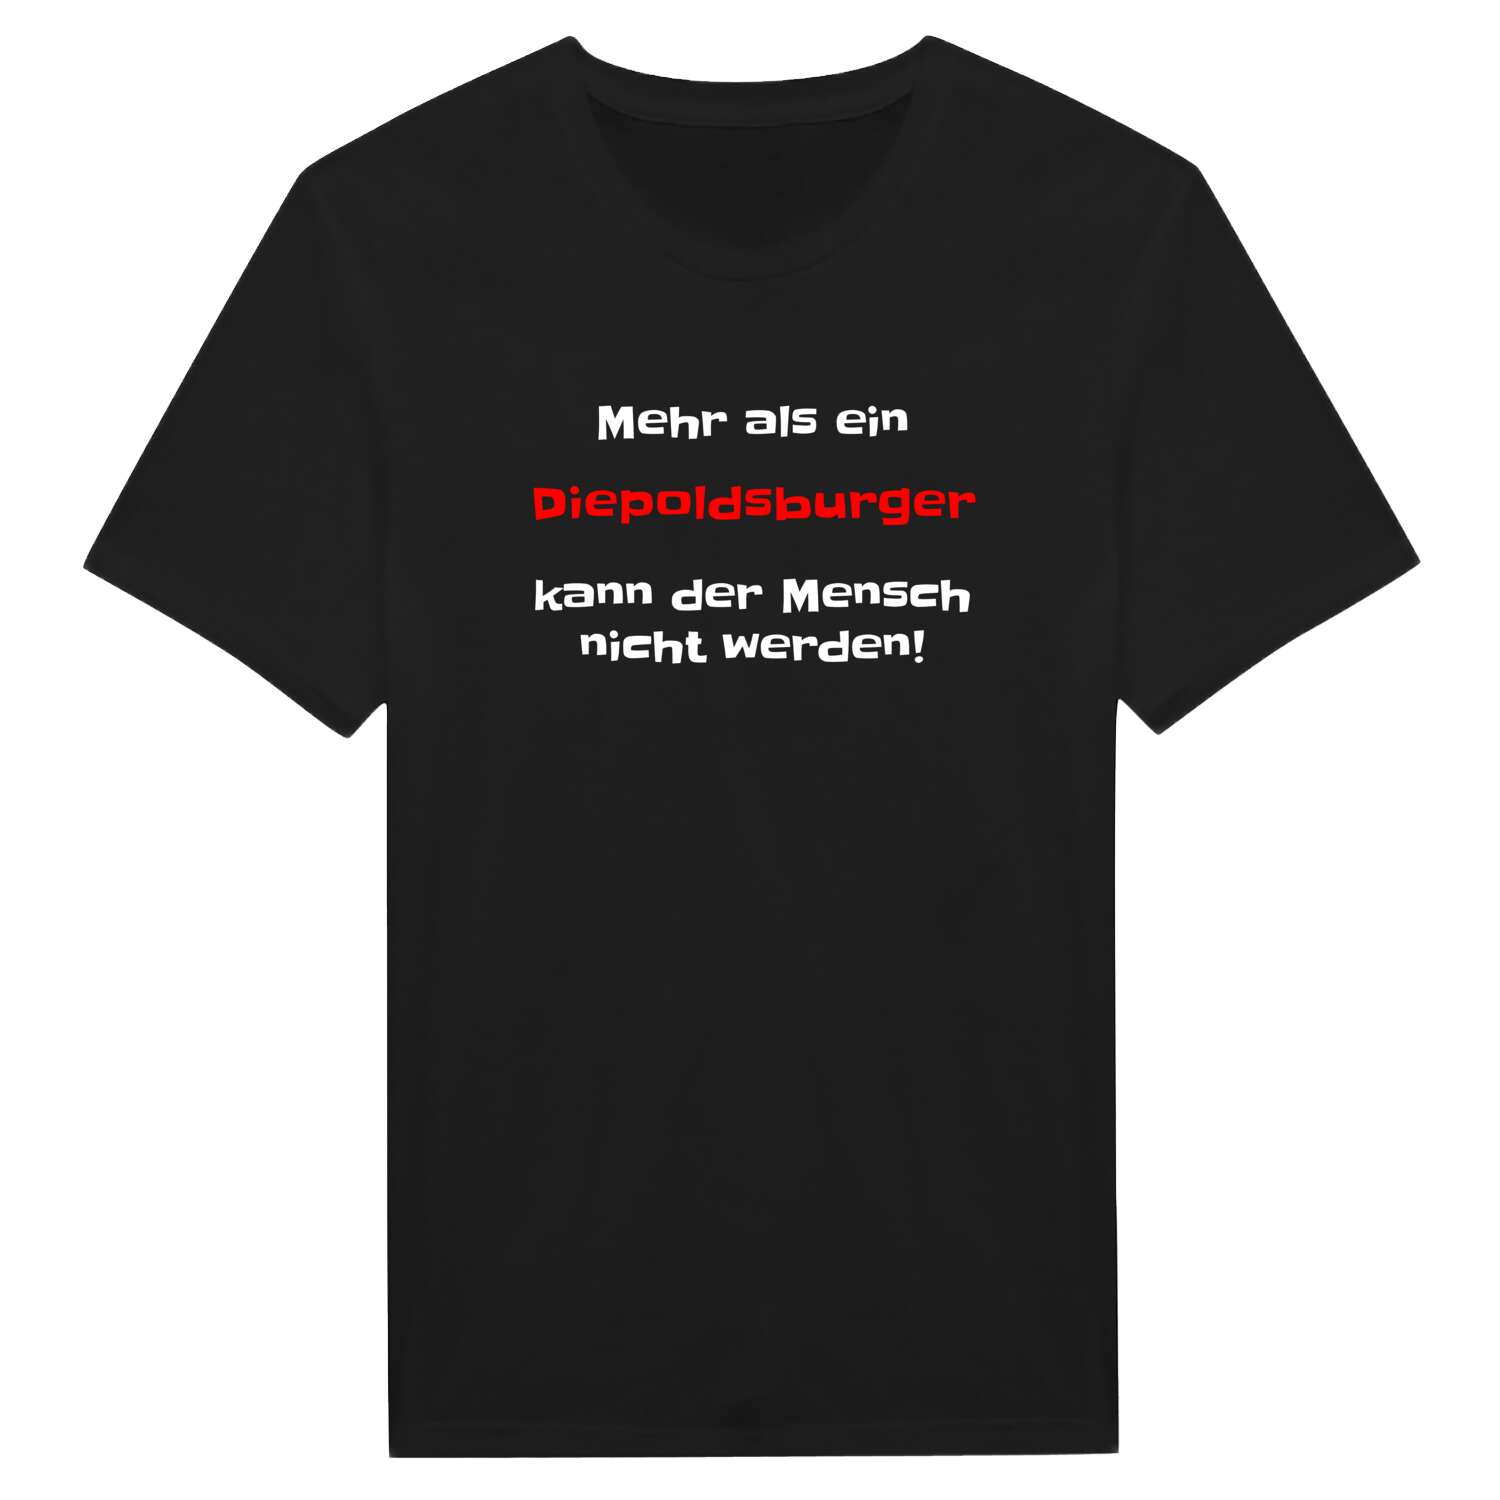 Diepoldsburg T-Shirt »Mehr als ein«